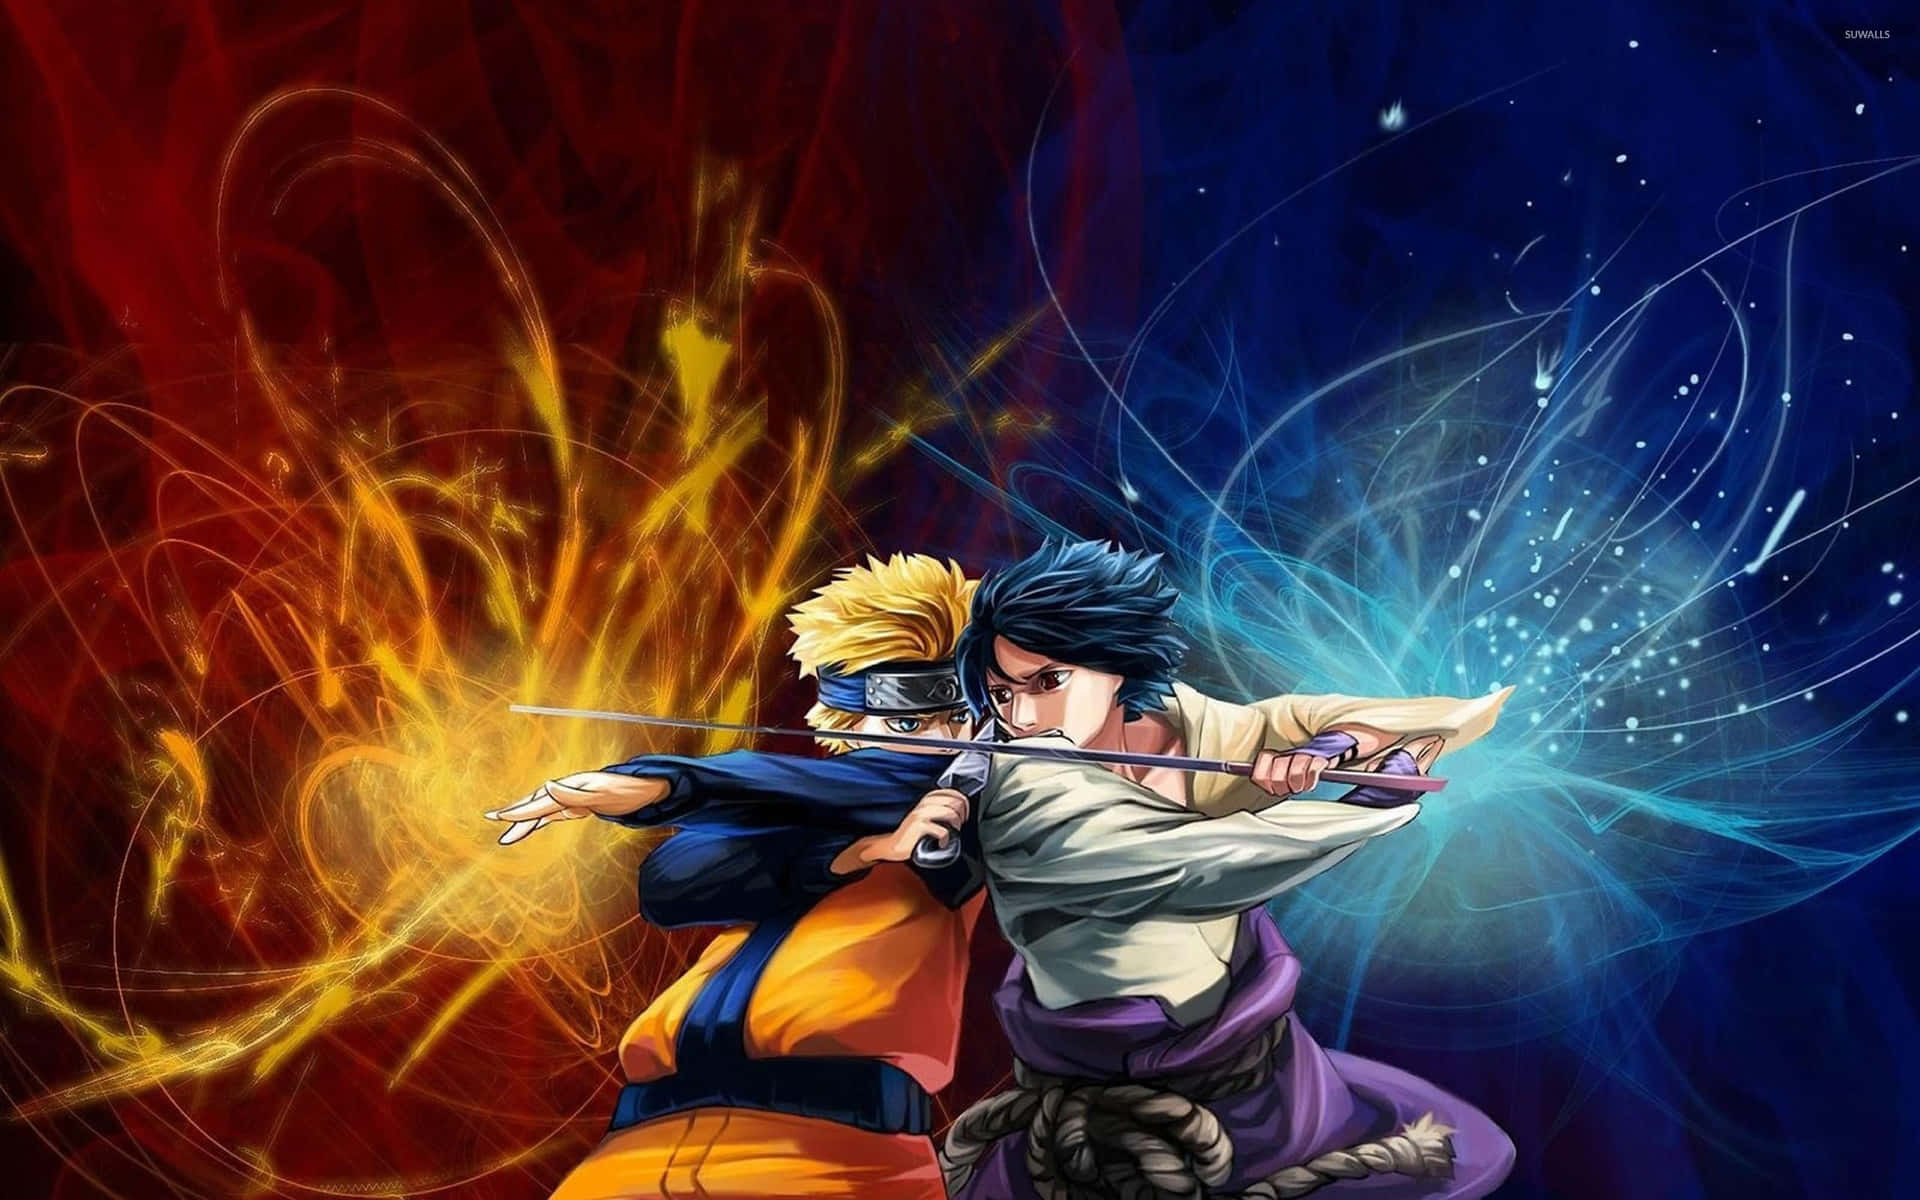 Erlebeeine Intensive Schlacht Als Naruto In Der Spannenden Welt Von Naruto Neon. Wallpaper